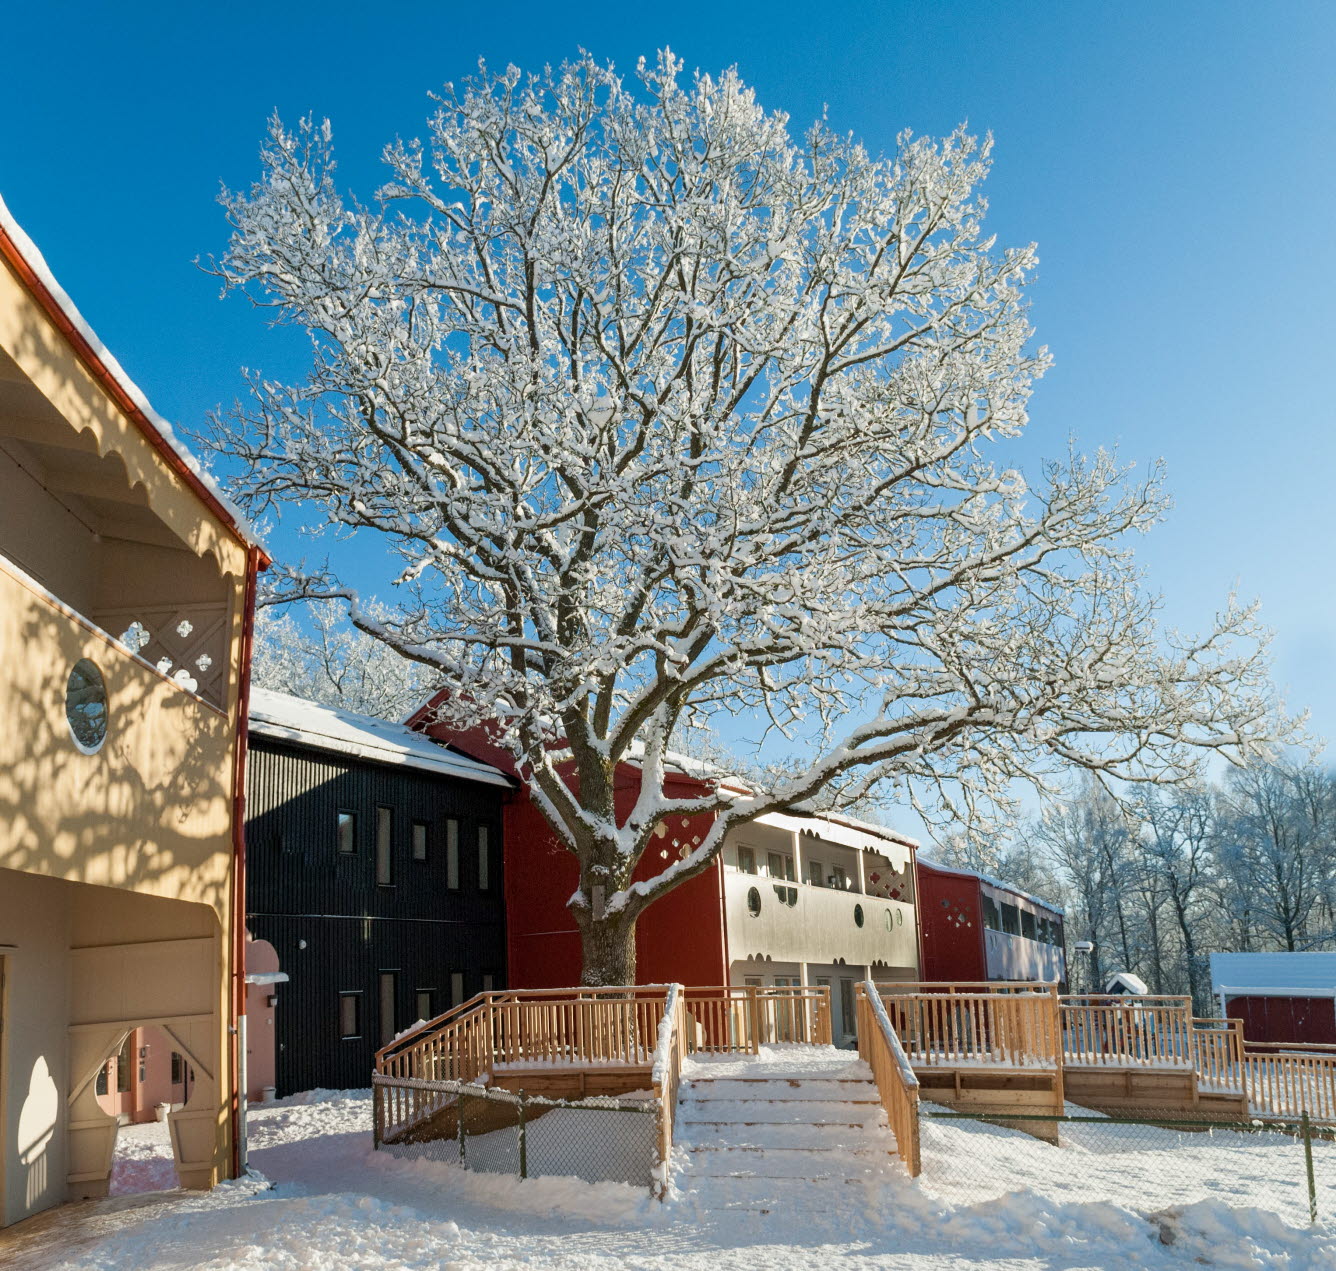 Stort träd med snö på grenarna. Vid trädet finns ett trädäck som även det är täckt av snö.